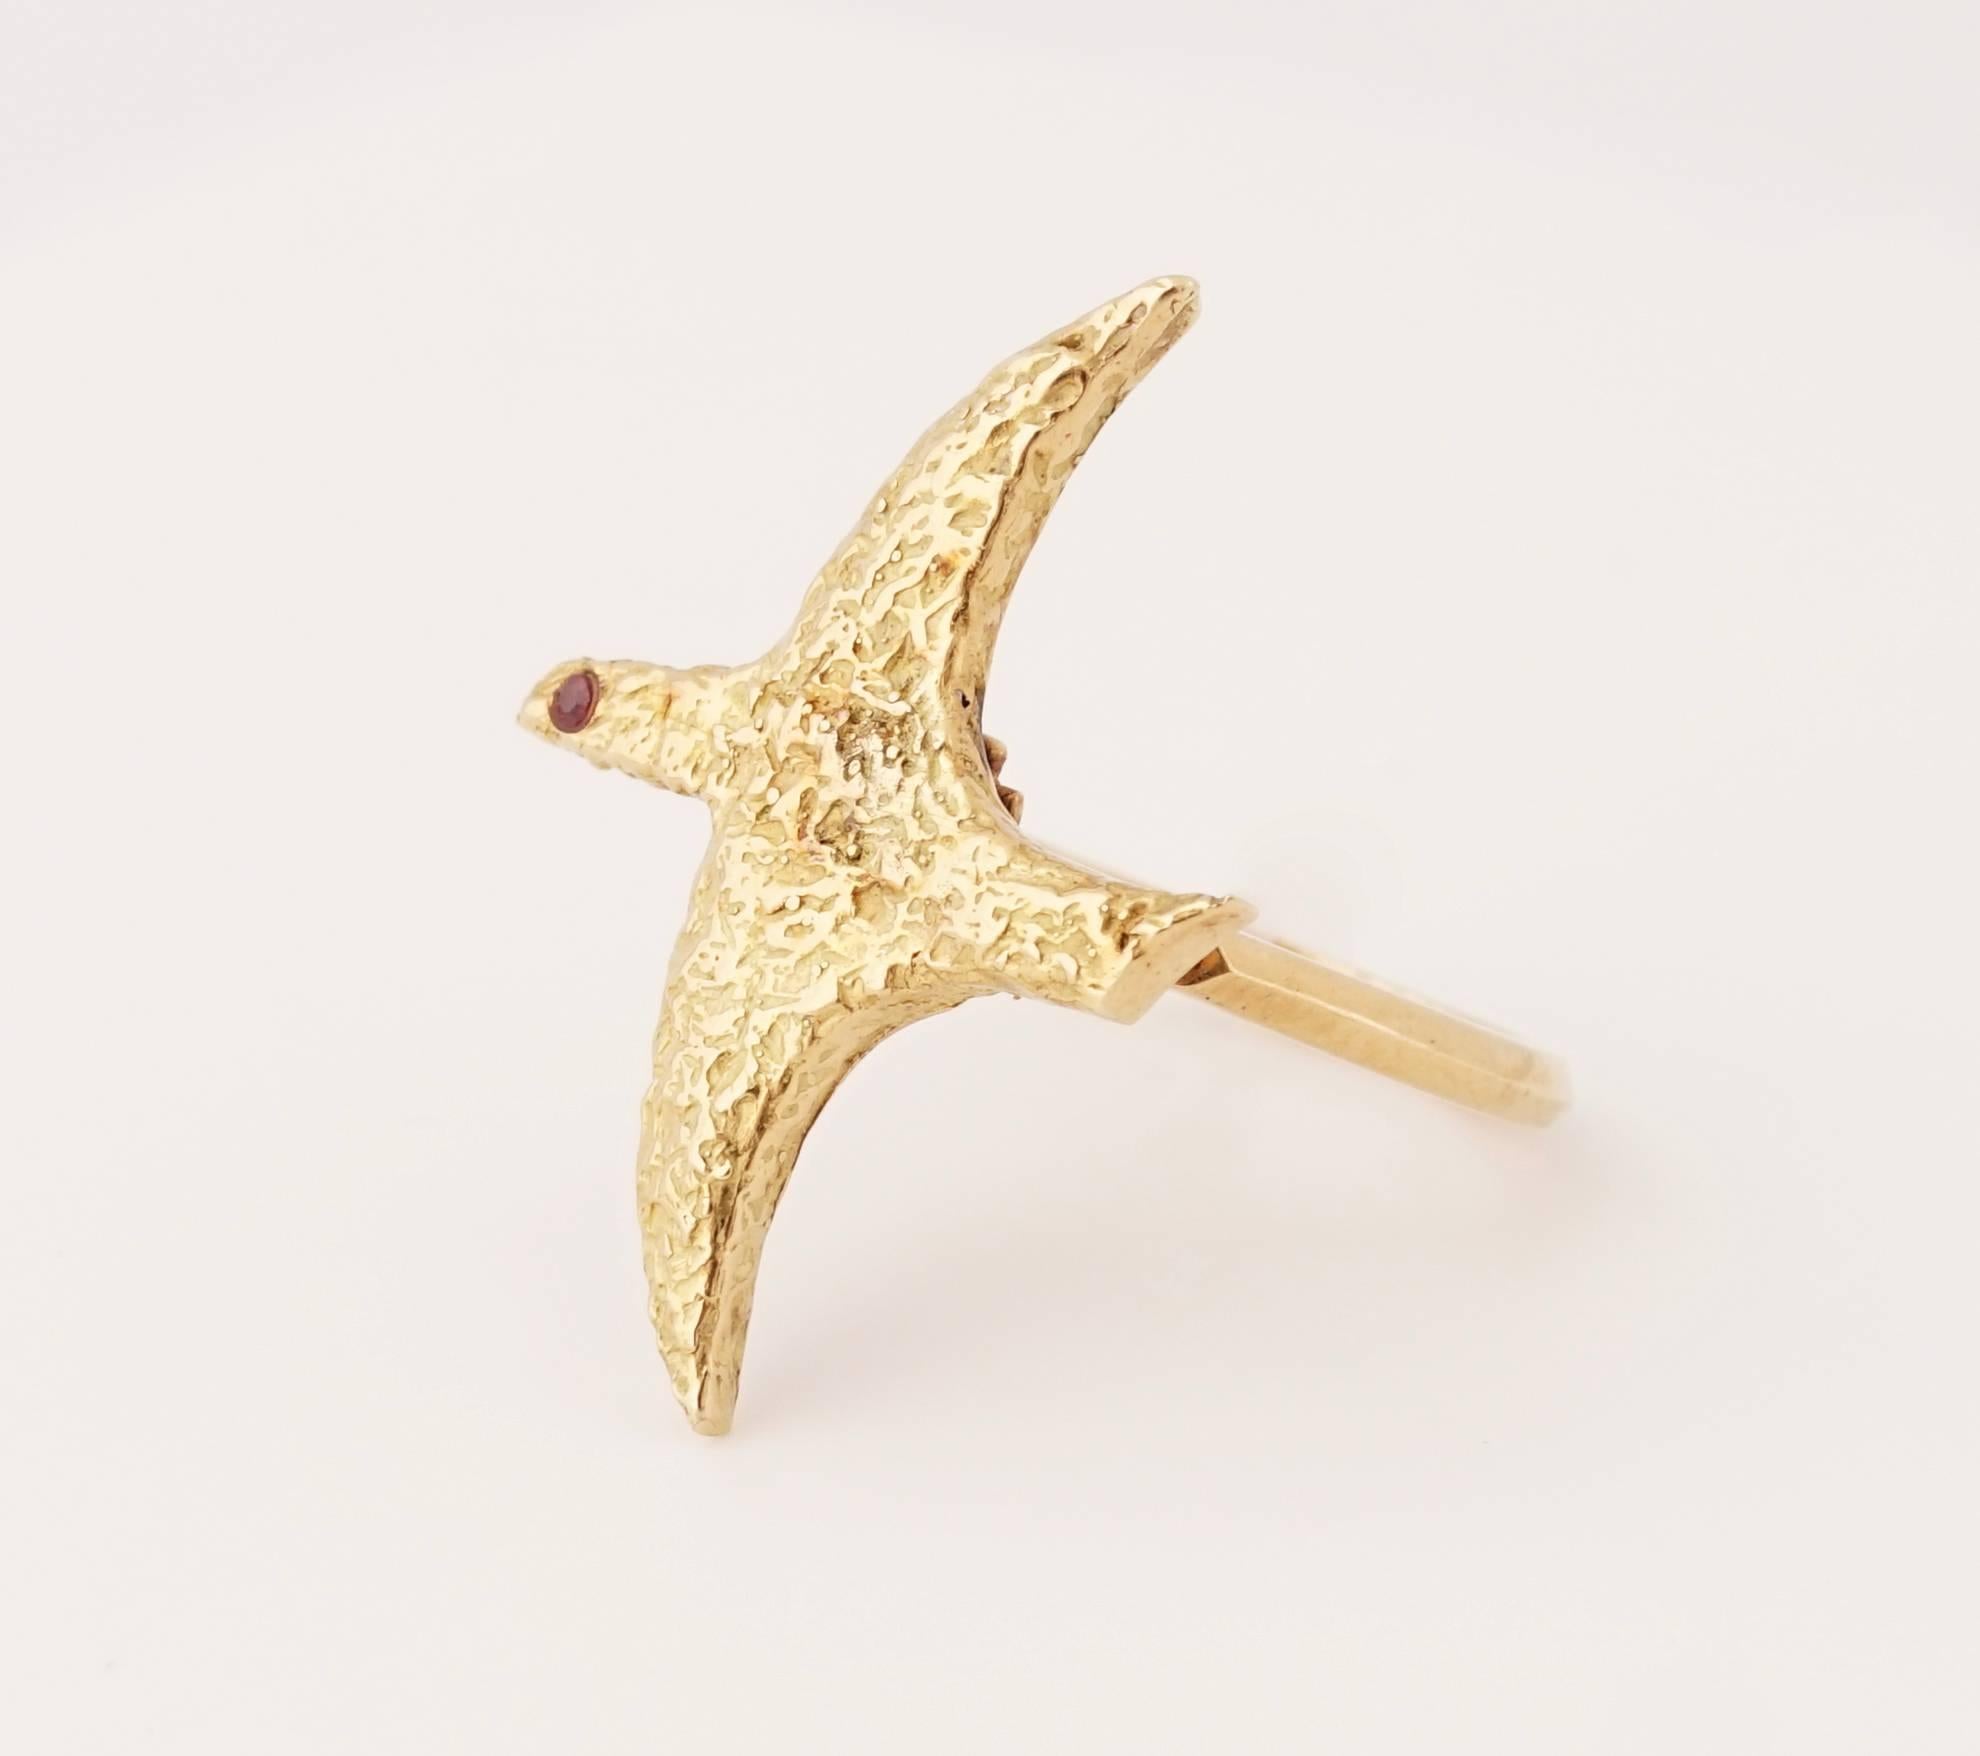 Expressversand während des Lockdowns versichert

Seltener Ring aus 18 Karat Gold und Rubin namens Leda von Georges Braque (1882-1963), dem Erfinder des Kubismus.
Es ist signiert 'B DE B' für Bijoux de Braque und 'H DE L' für Heger de Loewenfeld,